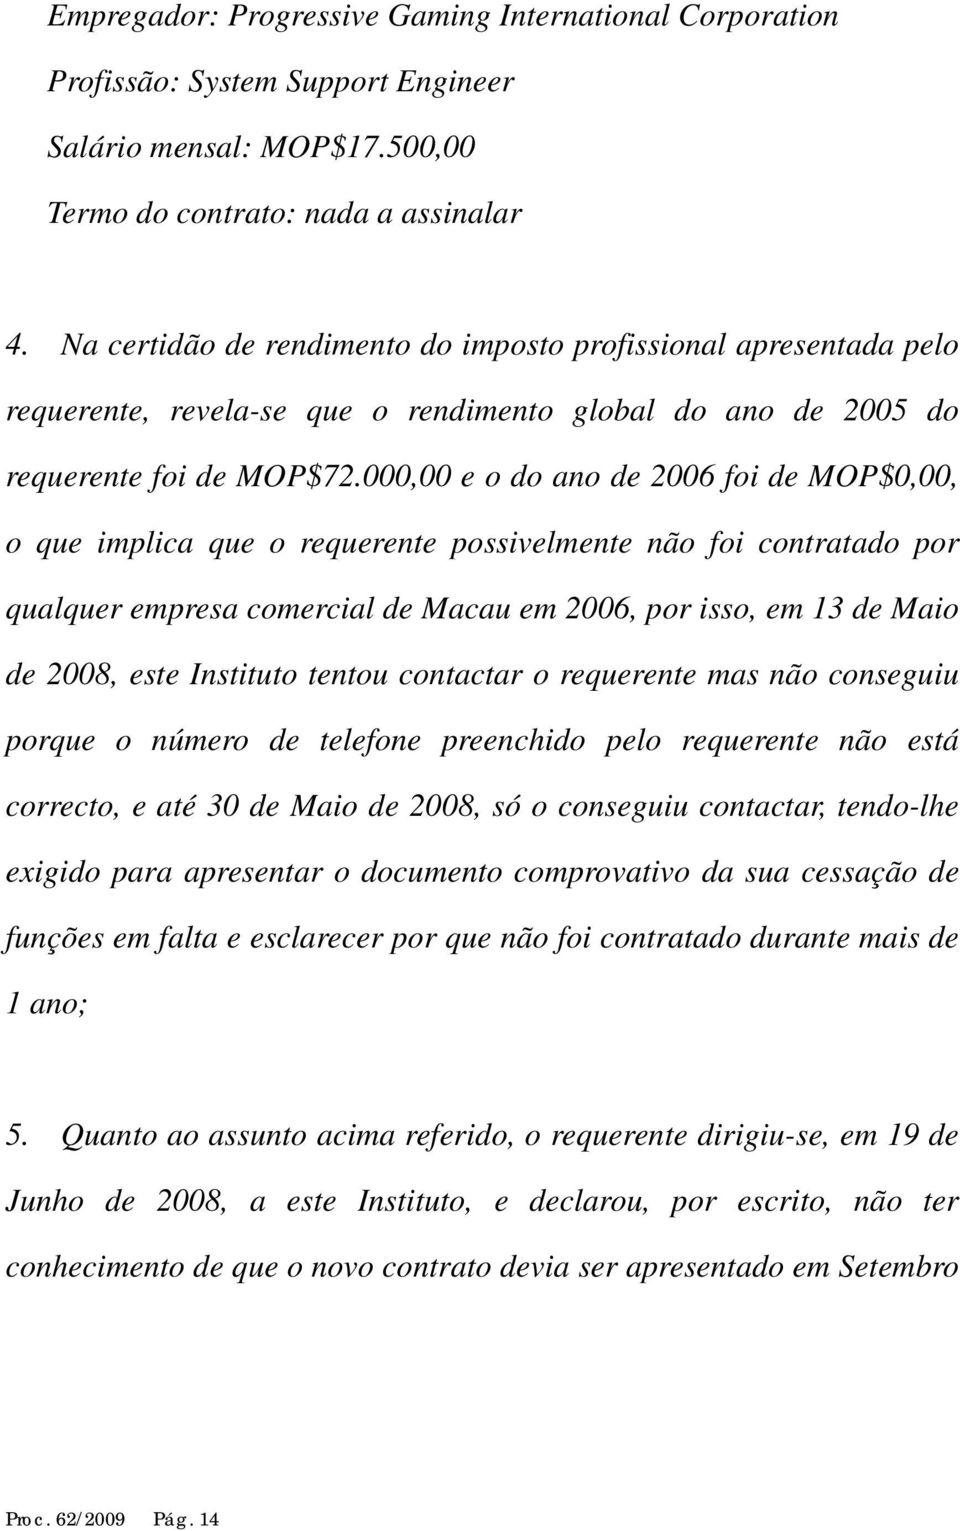 000,00 e o do ano de 2006 foi de MOP$0,00, o que implica que o requerente possivelmente não foi contratado por qualquer empresa comercial de Macau em 2006, por isso, em 13 de Maio de 2008, este